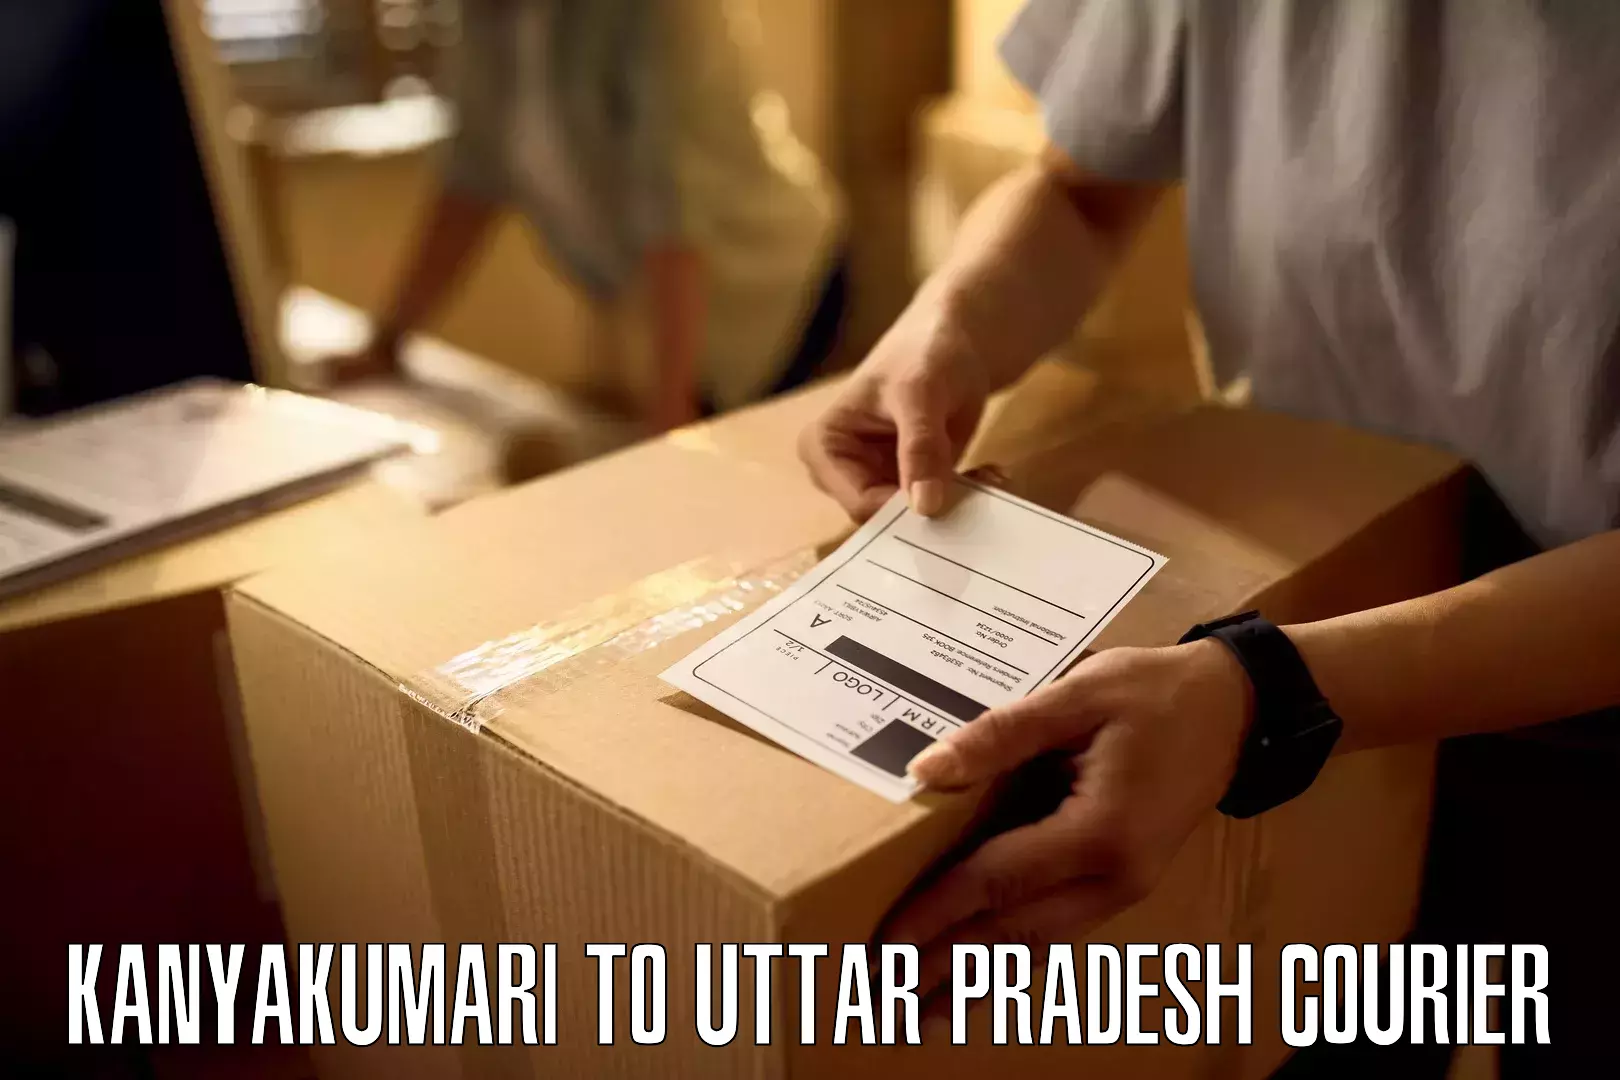 Return courier service in Kanyakumari to Vrindavan